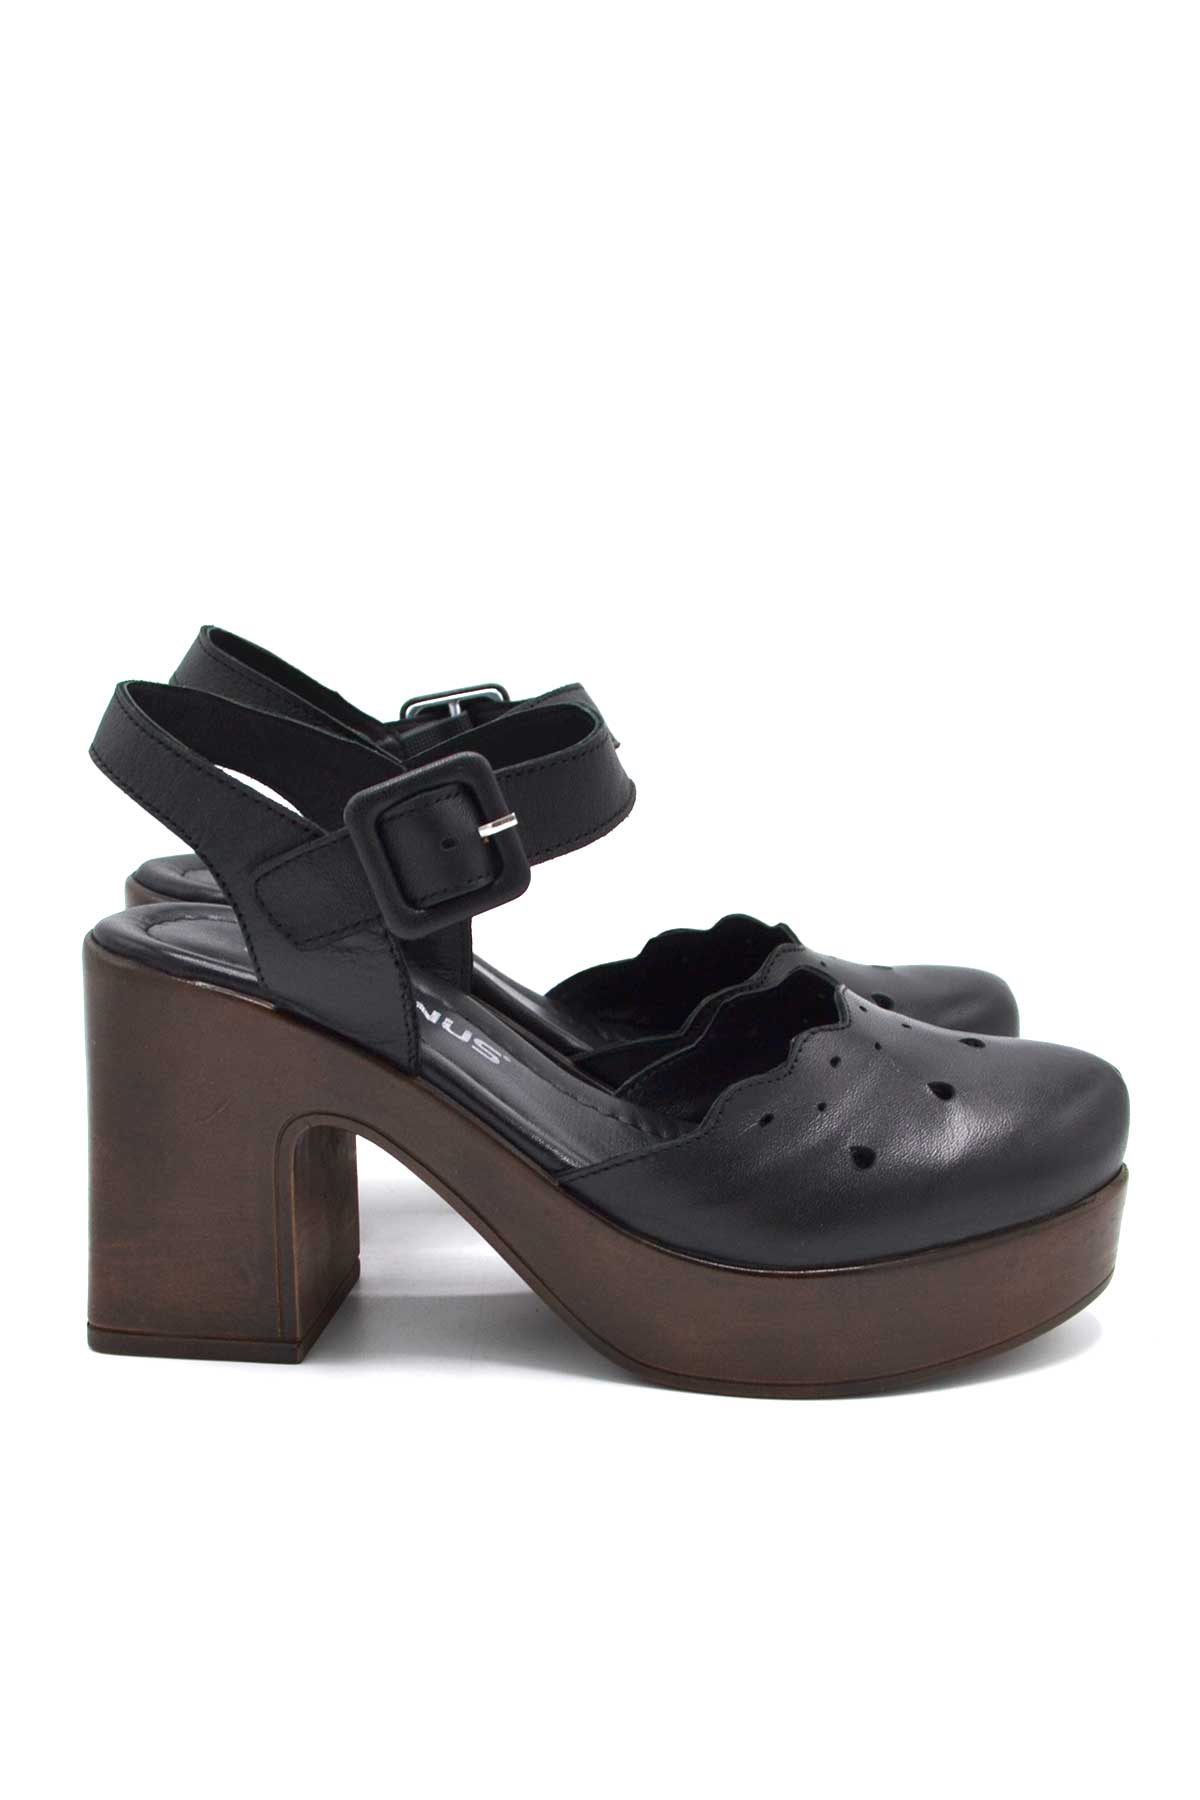 Kadın Apartman Topuk Deri Sandalet Siyah 2217001Y - Thumbnail